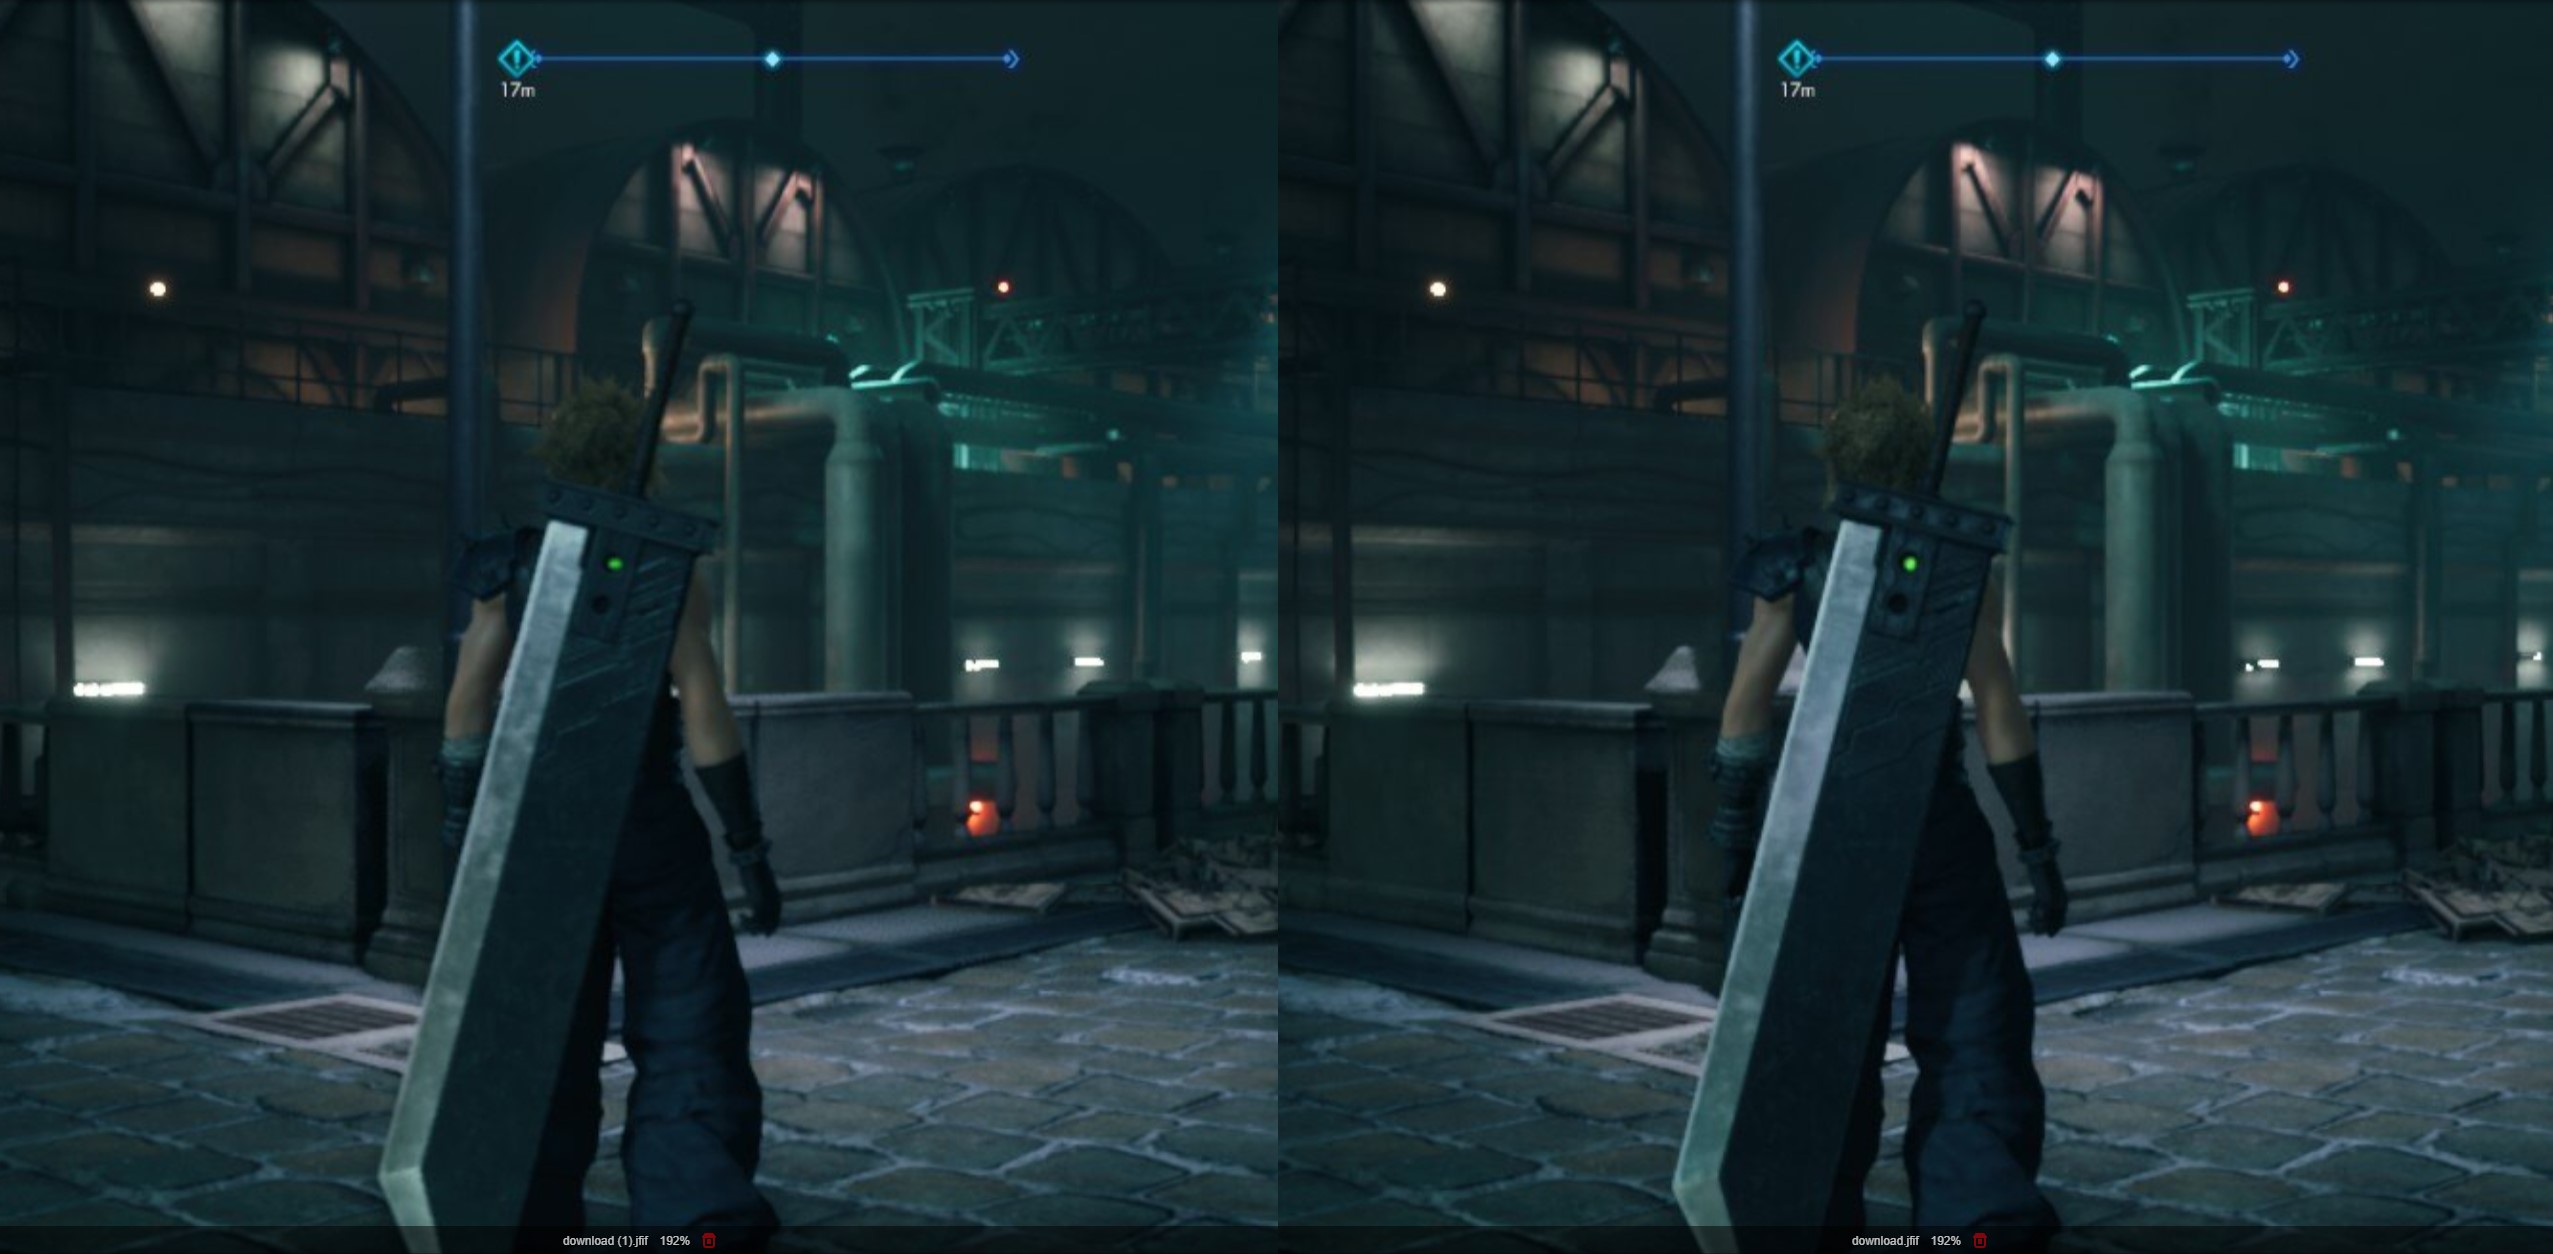 การเปรียบเทียบคุณภาพของภาพสำหรับ Final Fantasy VII Remake บน Steam Deck